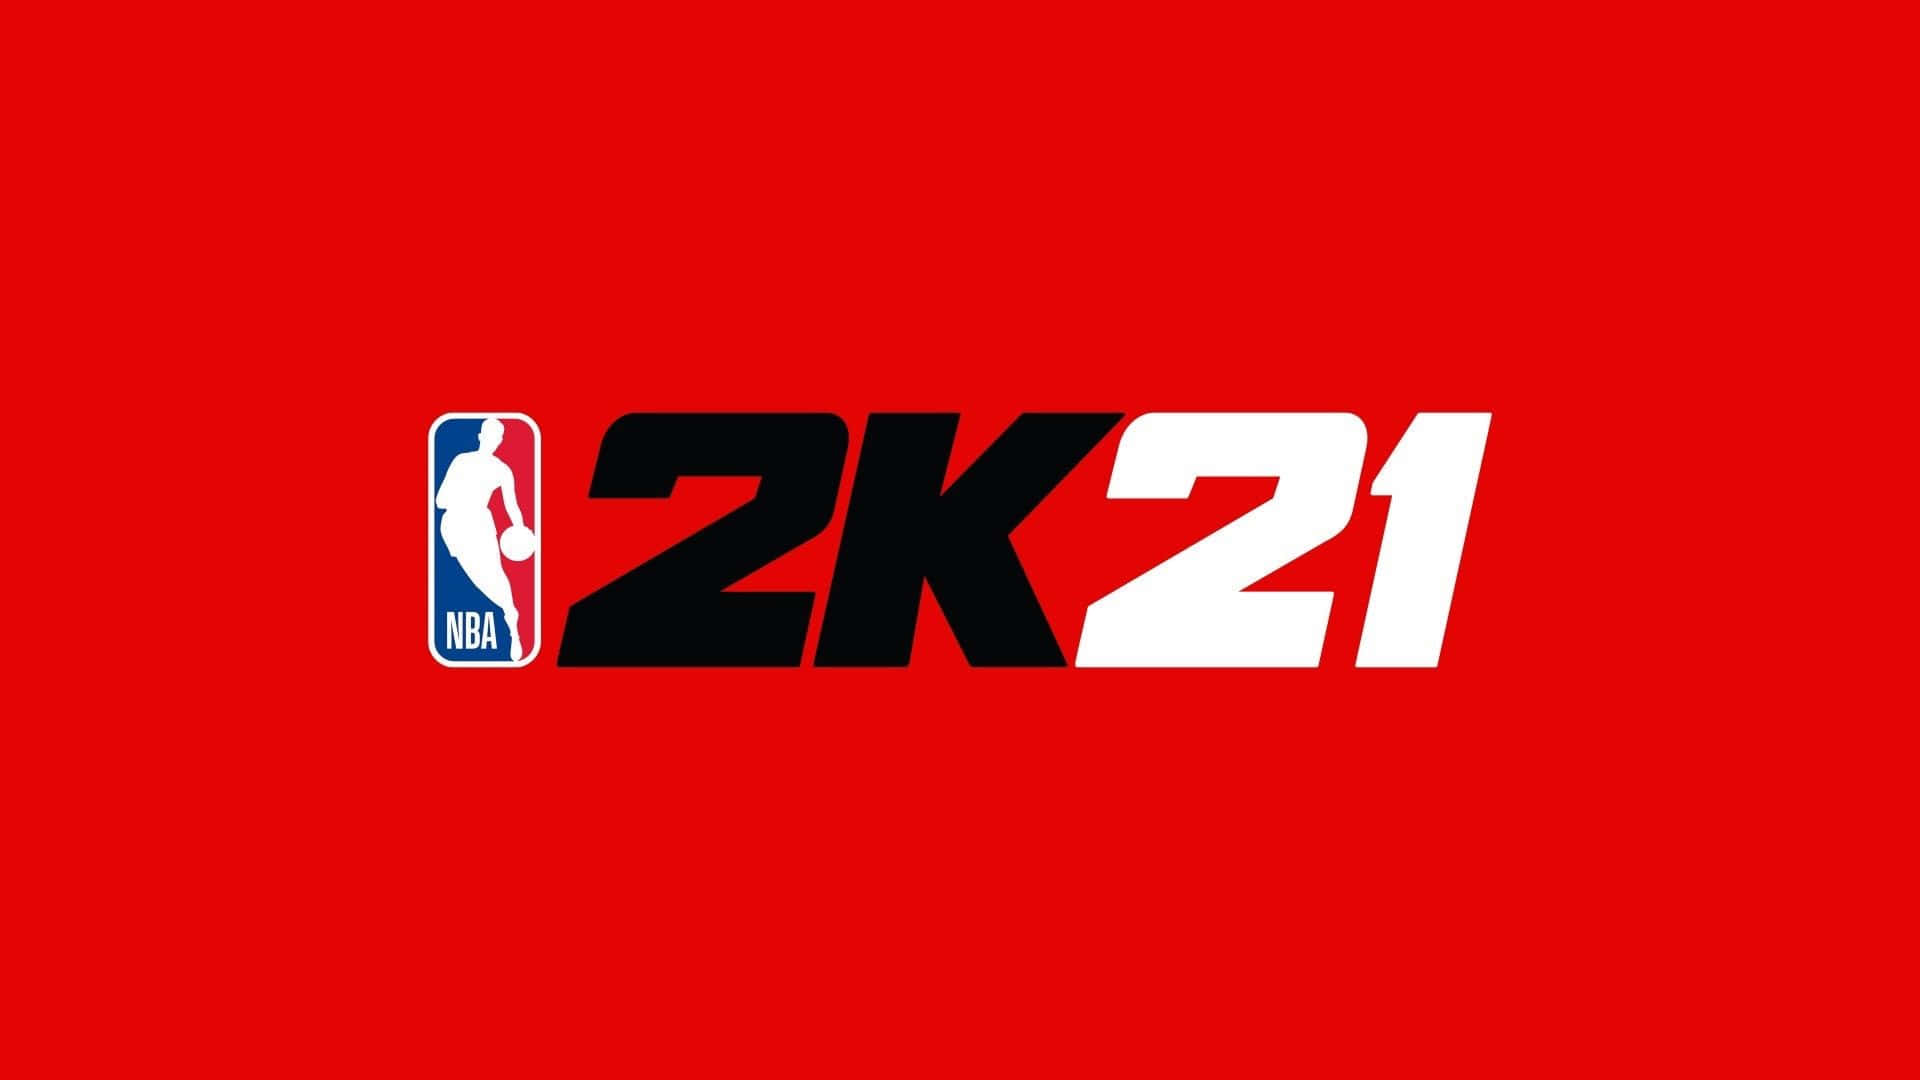 NBA 2k21 Logo-Tapet: Få det ikoniske NBA 2k21-logo som dit tapet. Wallpaper